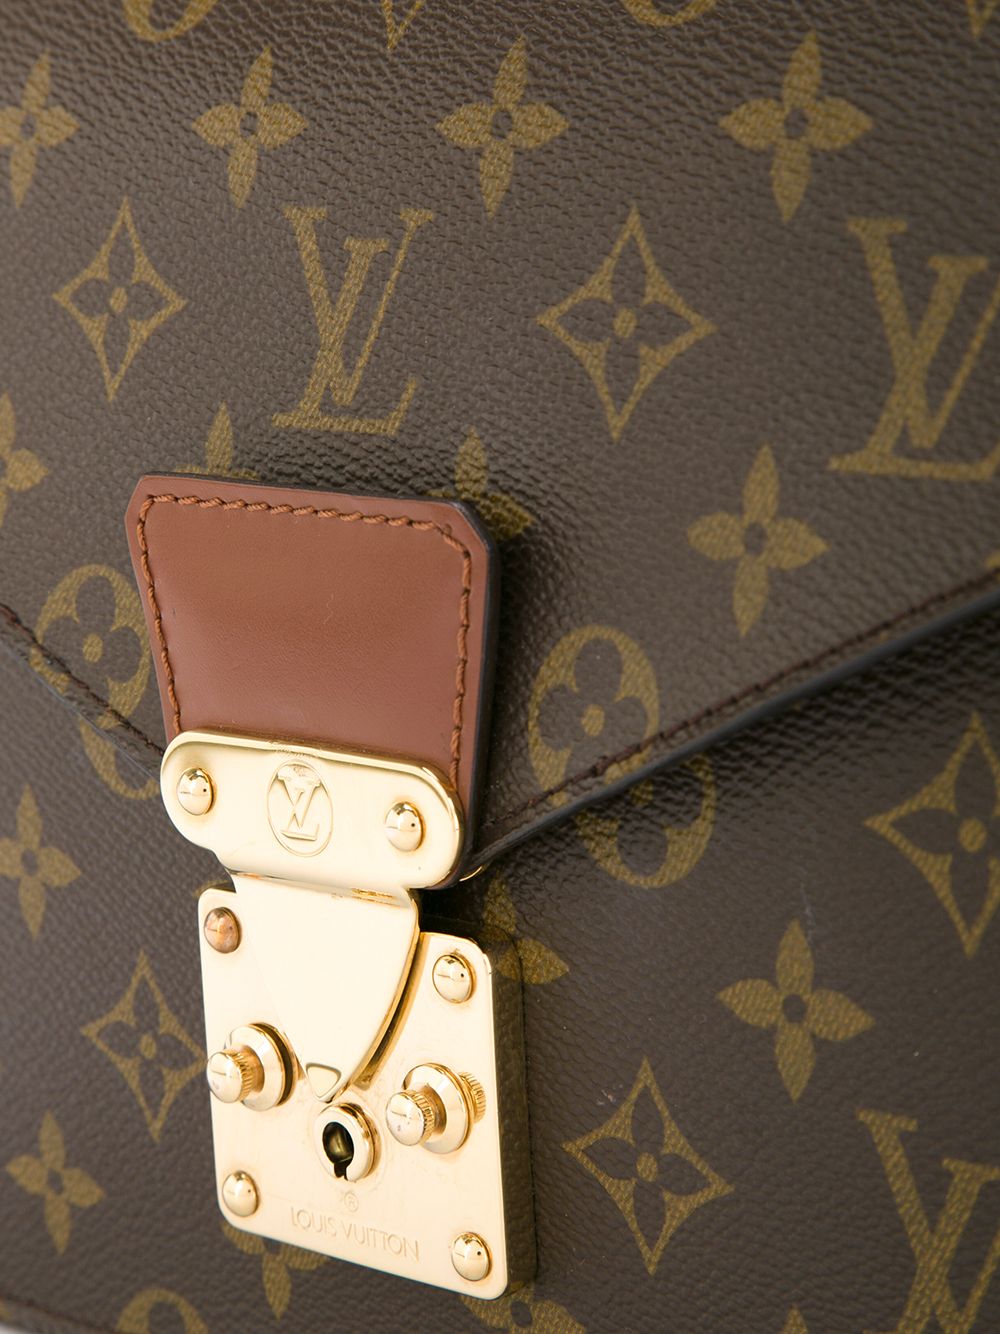 Louis Vuitton Concorde Monogram Handbag - Farfetch